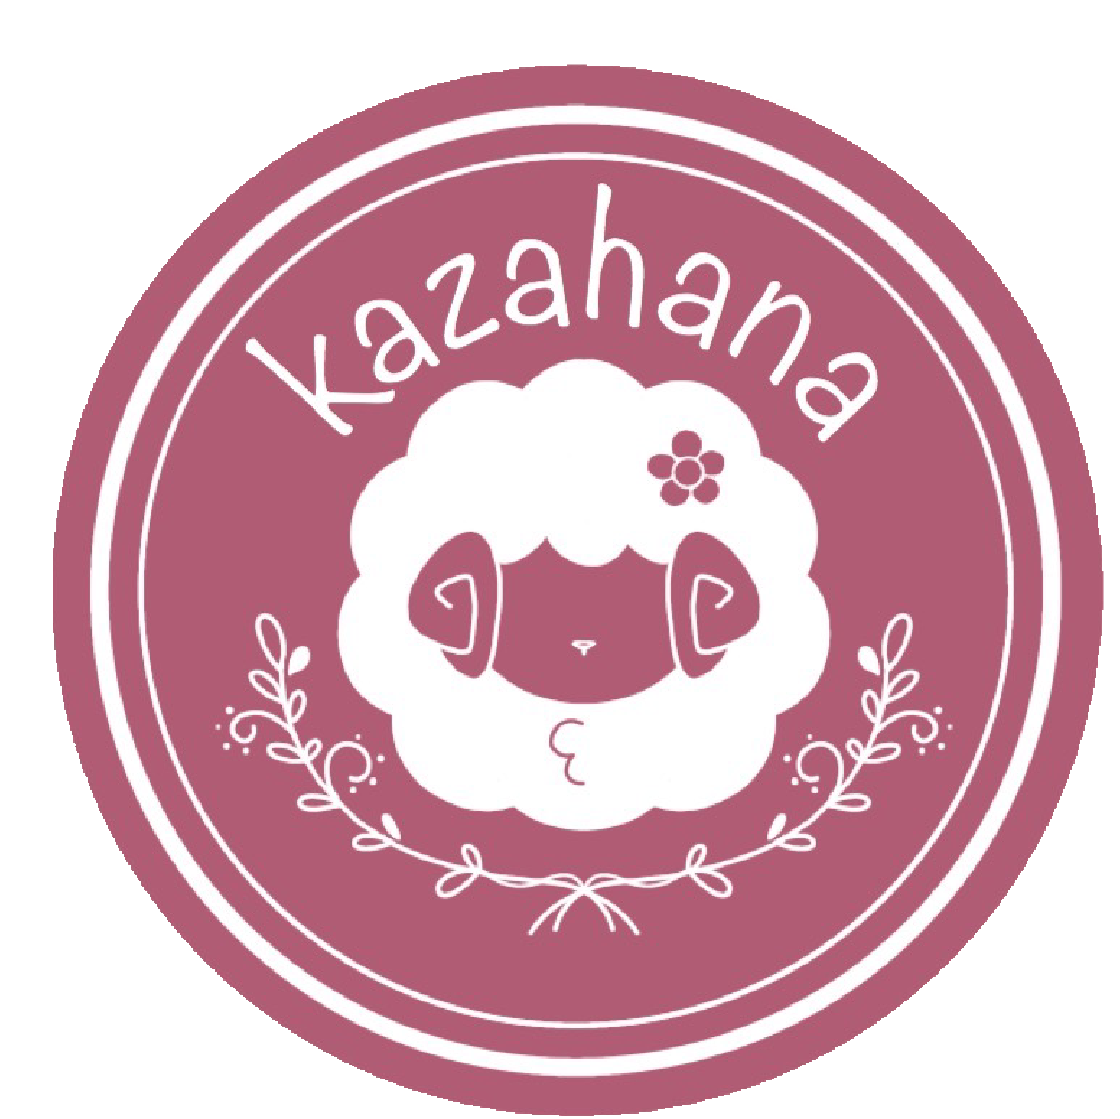 Kazahana